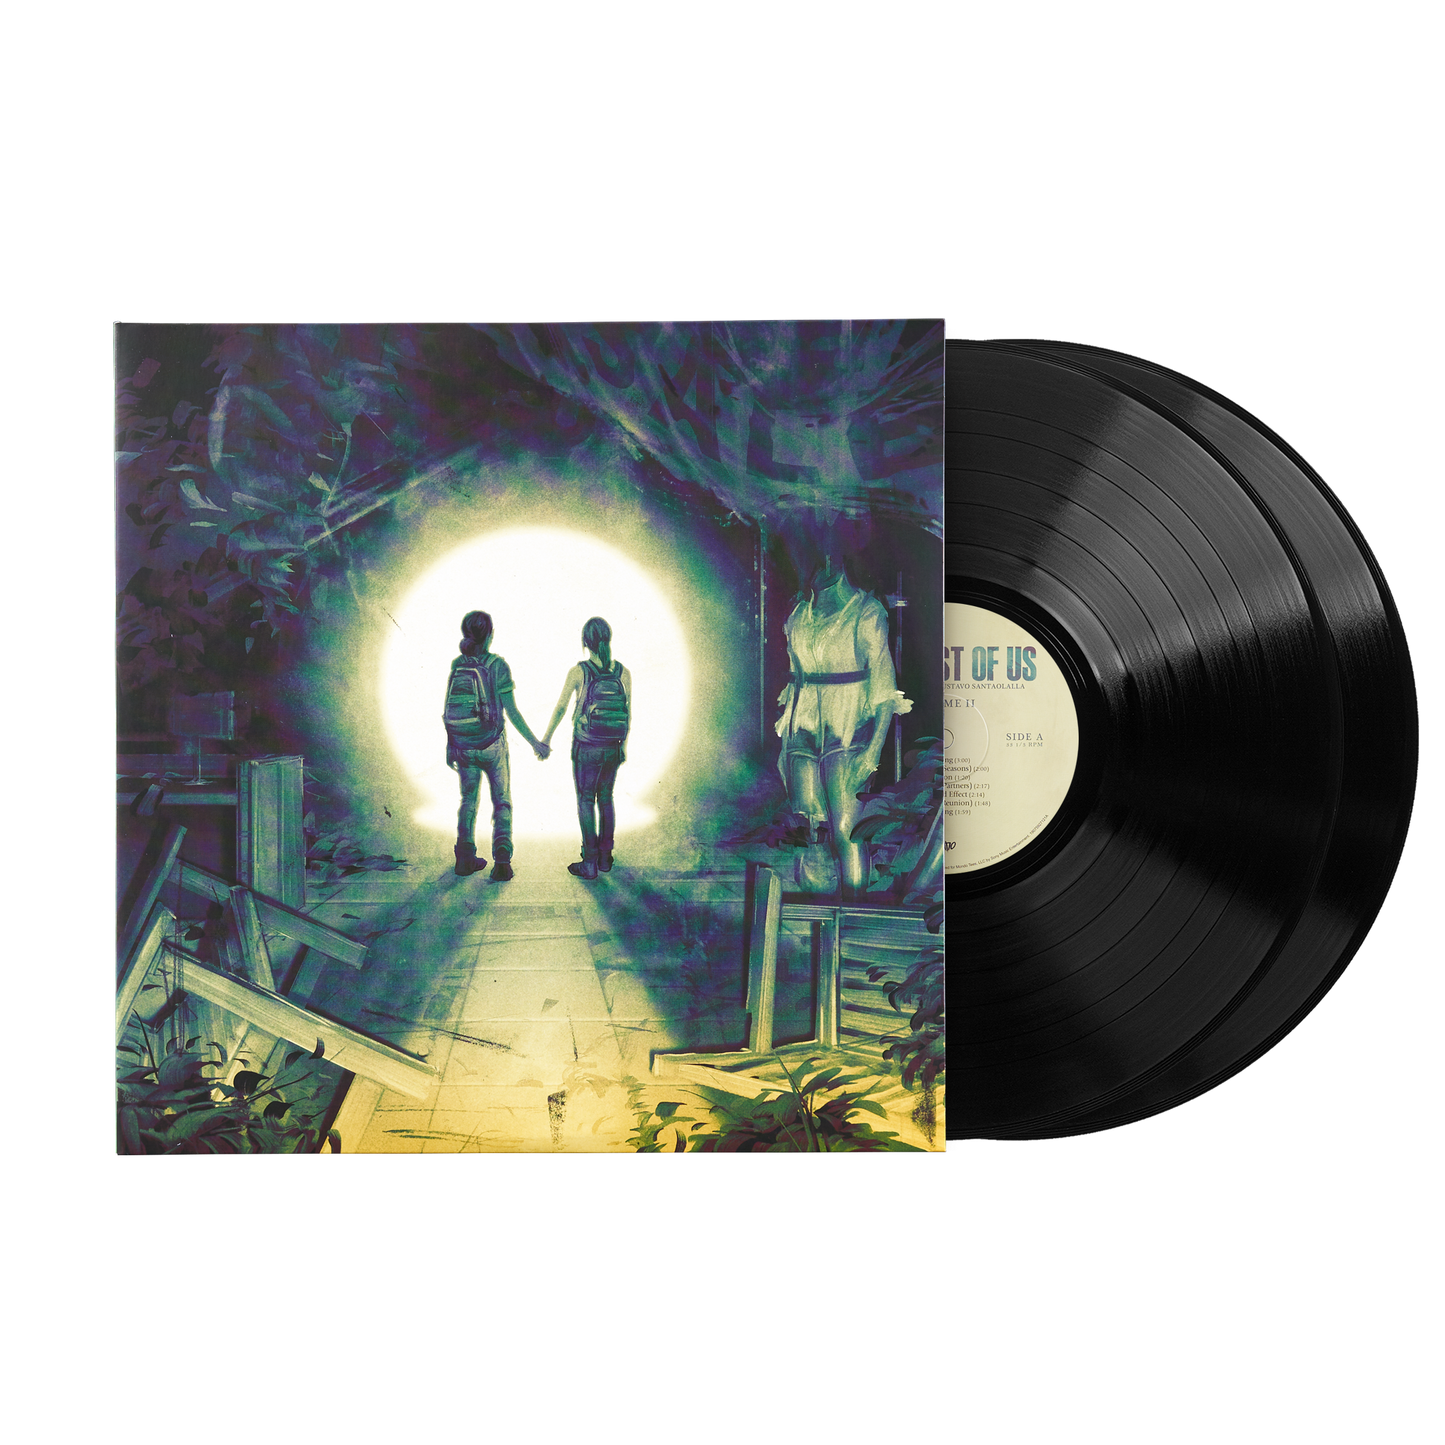 MOND-029 - Gustavo Santaolalla - The Last of Us Vol. 2 - Video Game Soundtrack